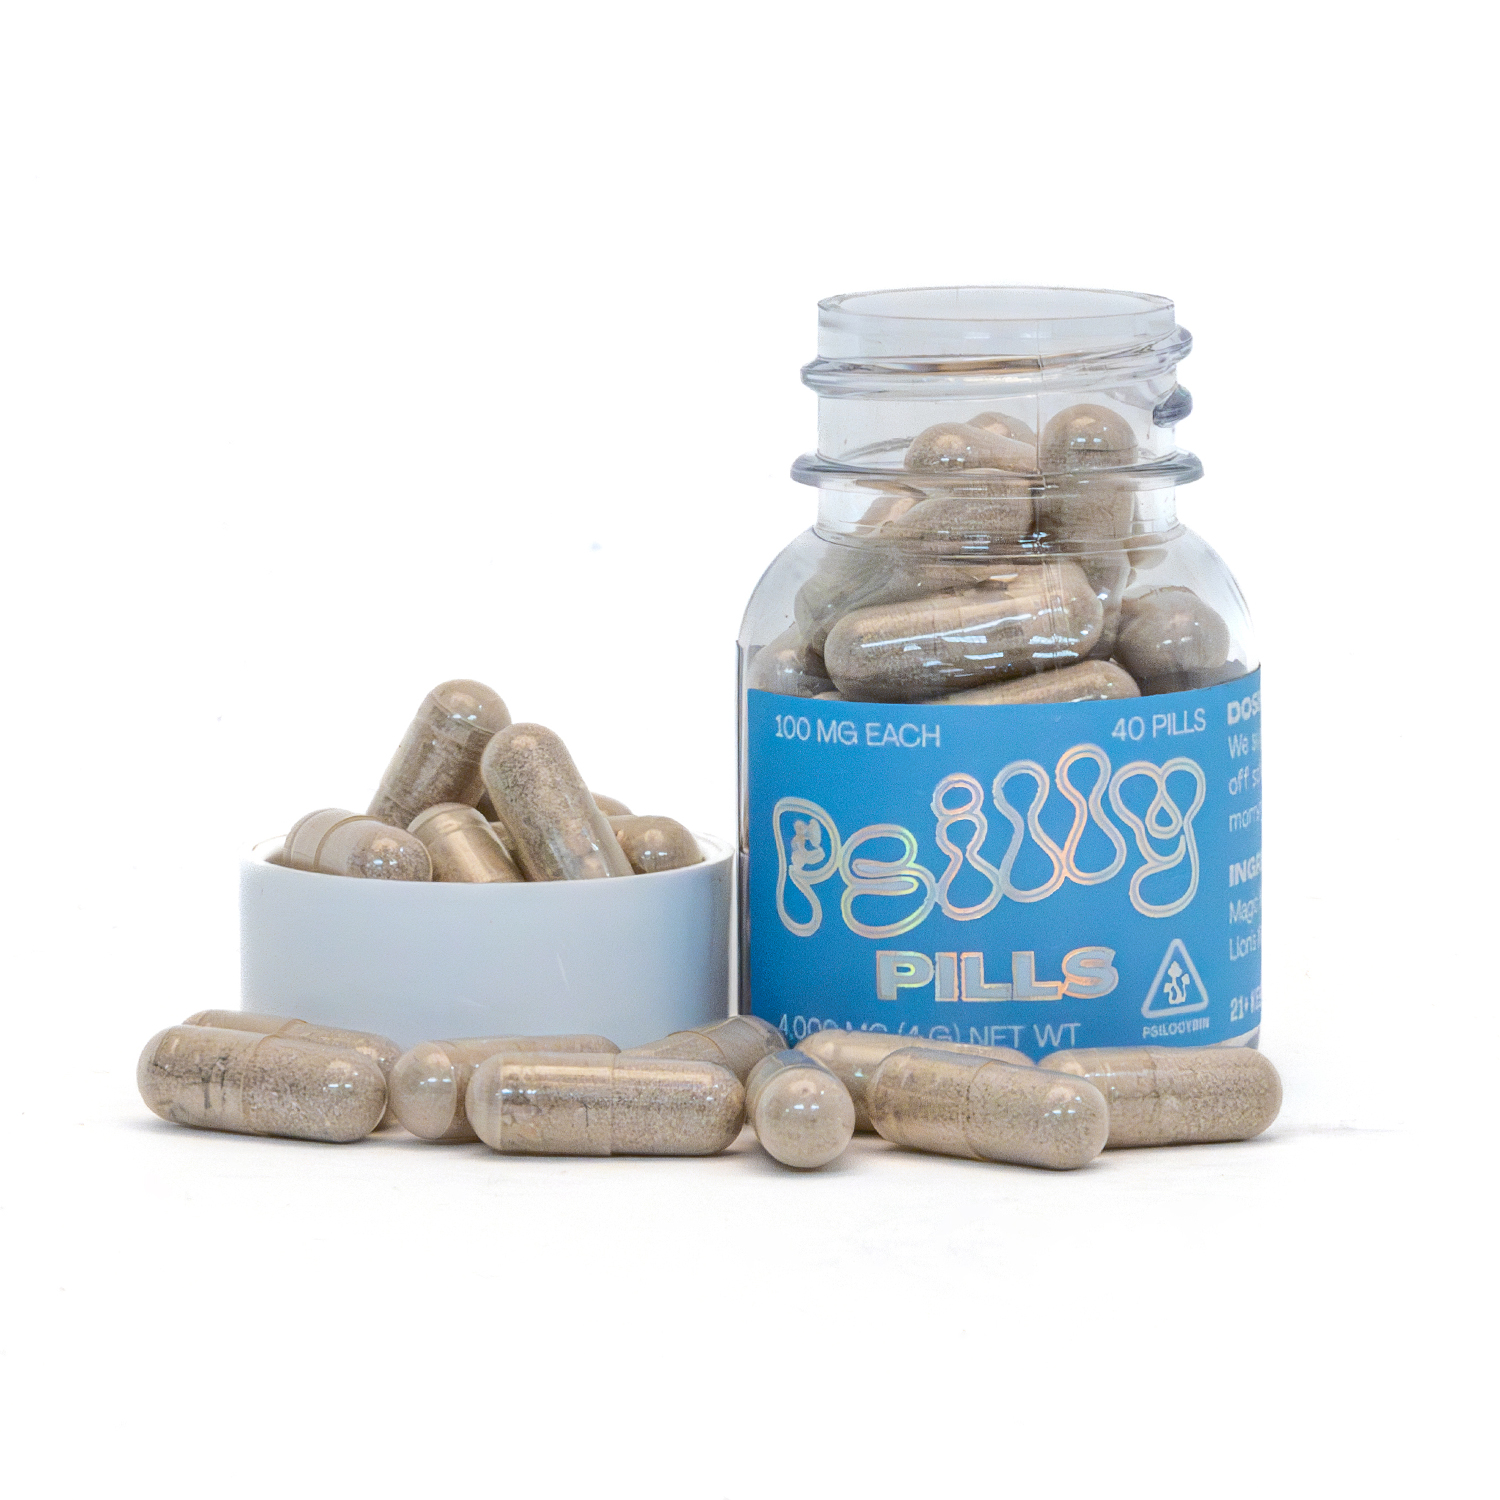 Psilly Mushroom Pills Jar 4g (100mg x 40 caps)